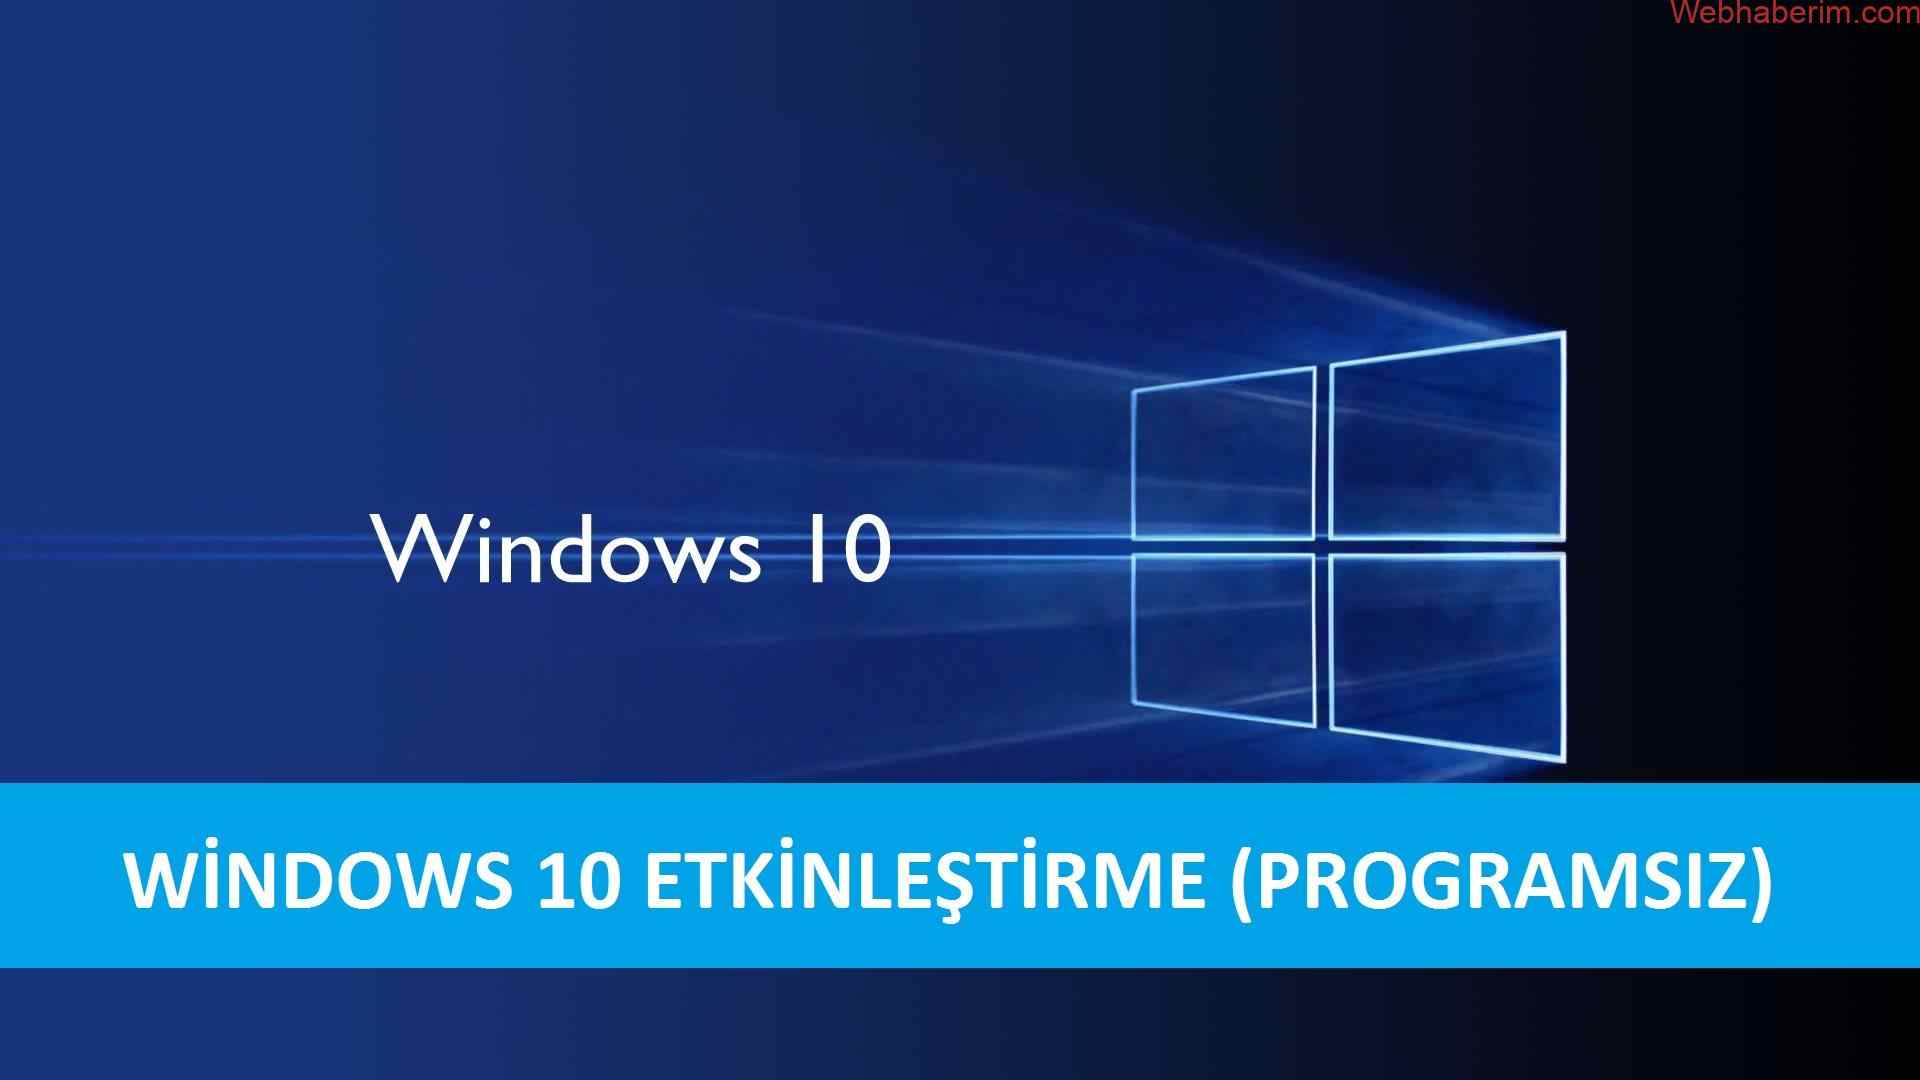 Windows 10 Etkinleştirme (Programsız)